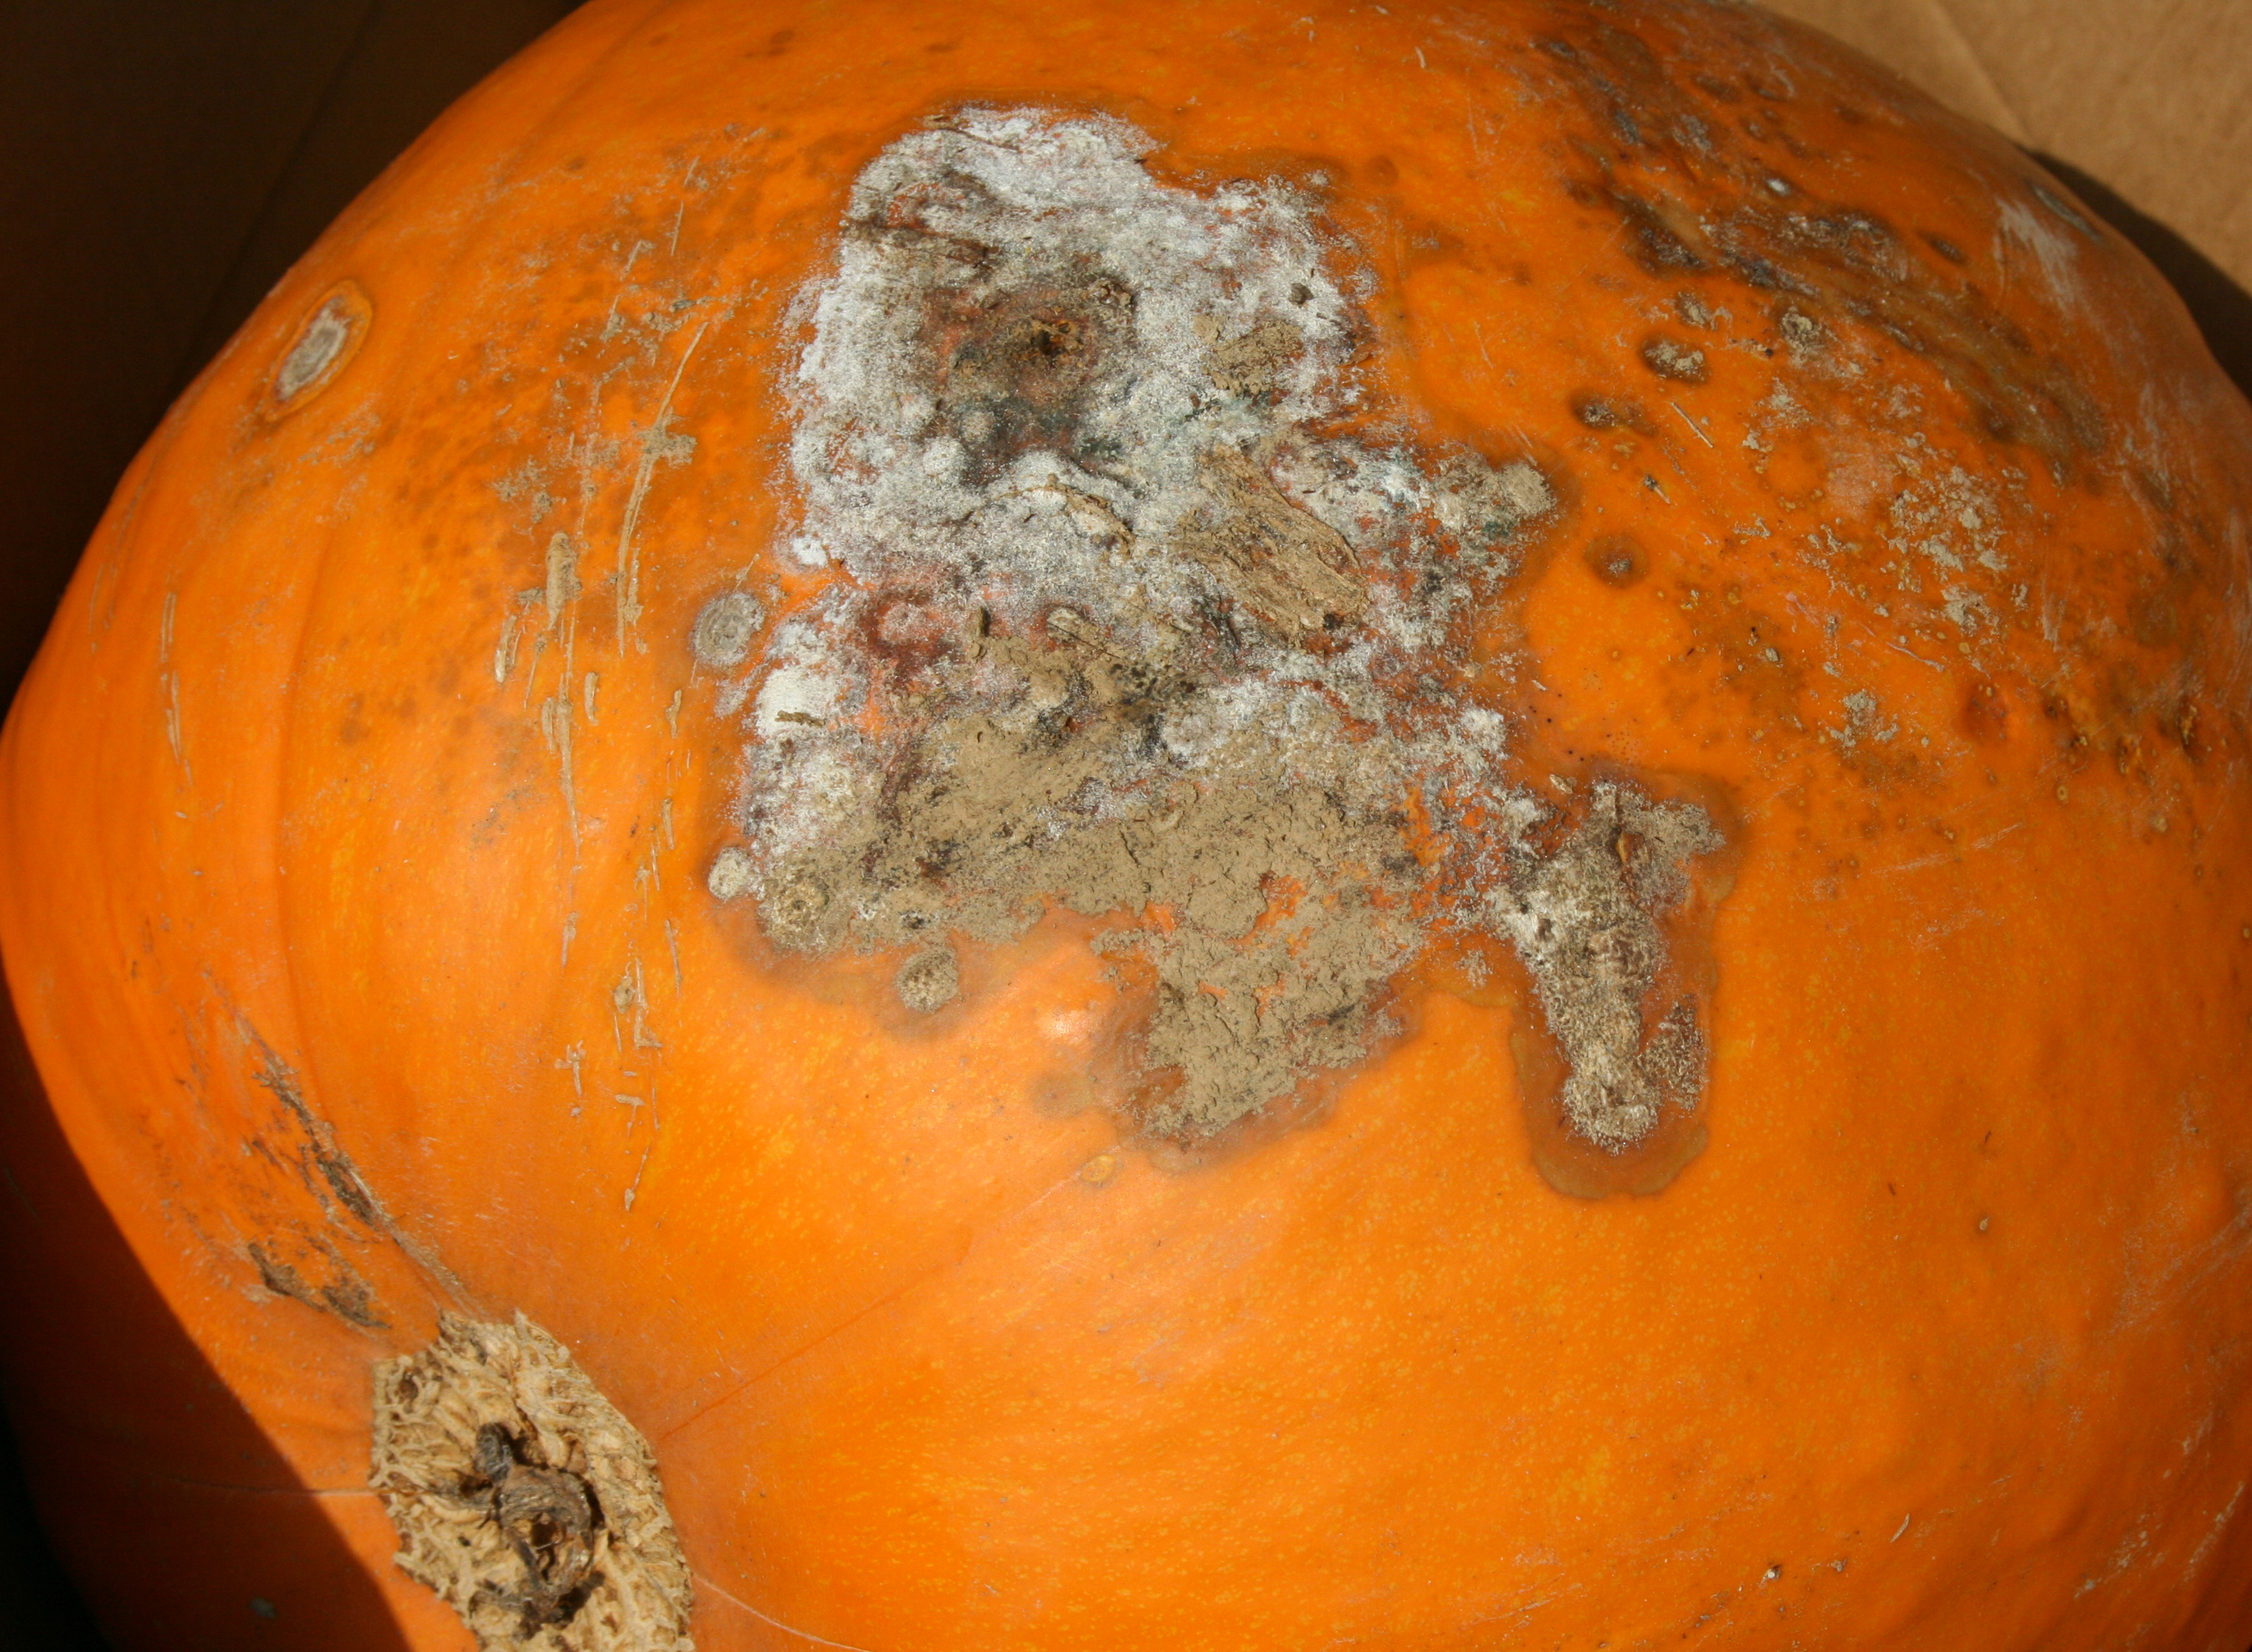 Fusarium fruit rot on pumpkin.